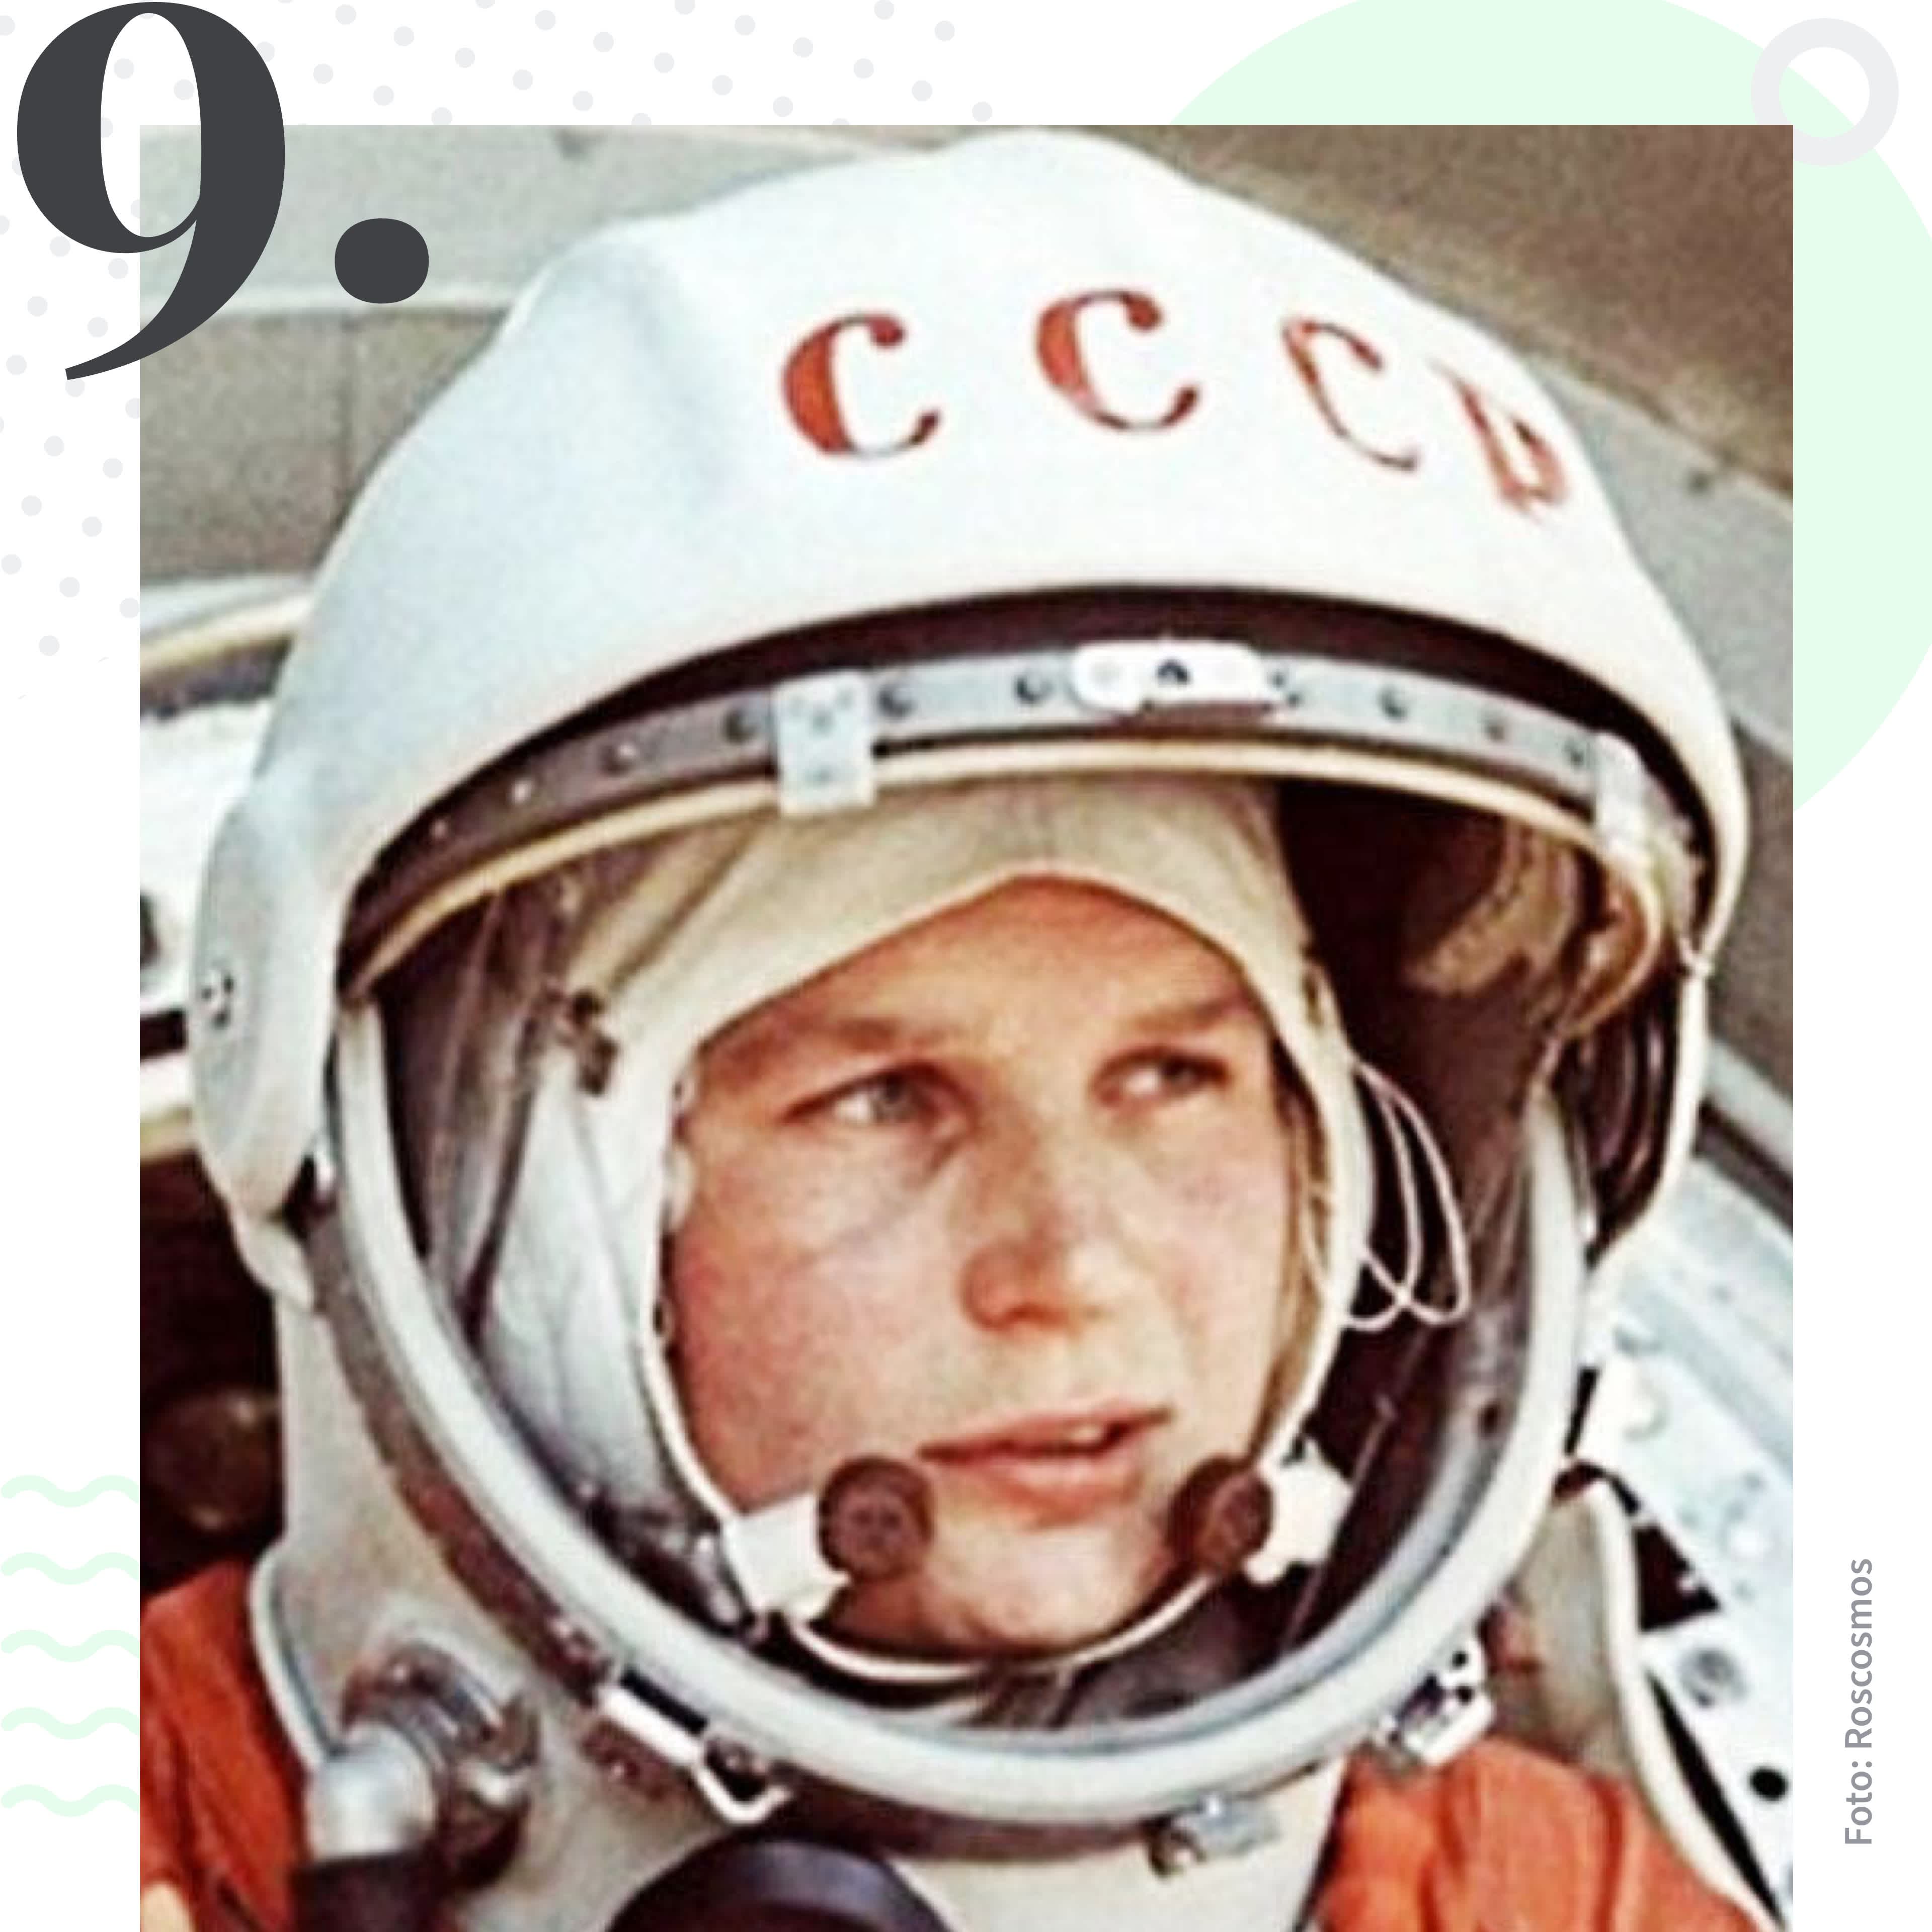 Valentina Tereshkova war die erste Frau im Weltall. Platz 9 im Tourlane Ranking der inspirierendsten Entdeckerinnen. 